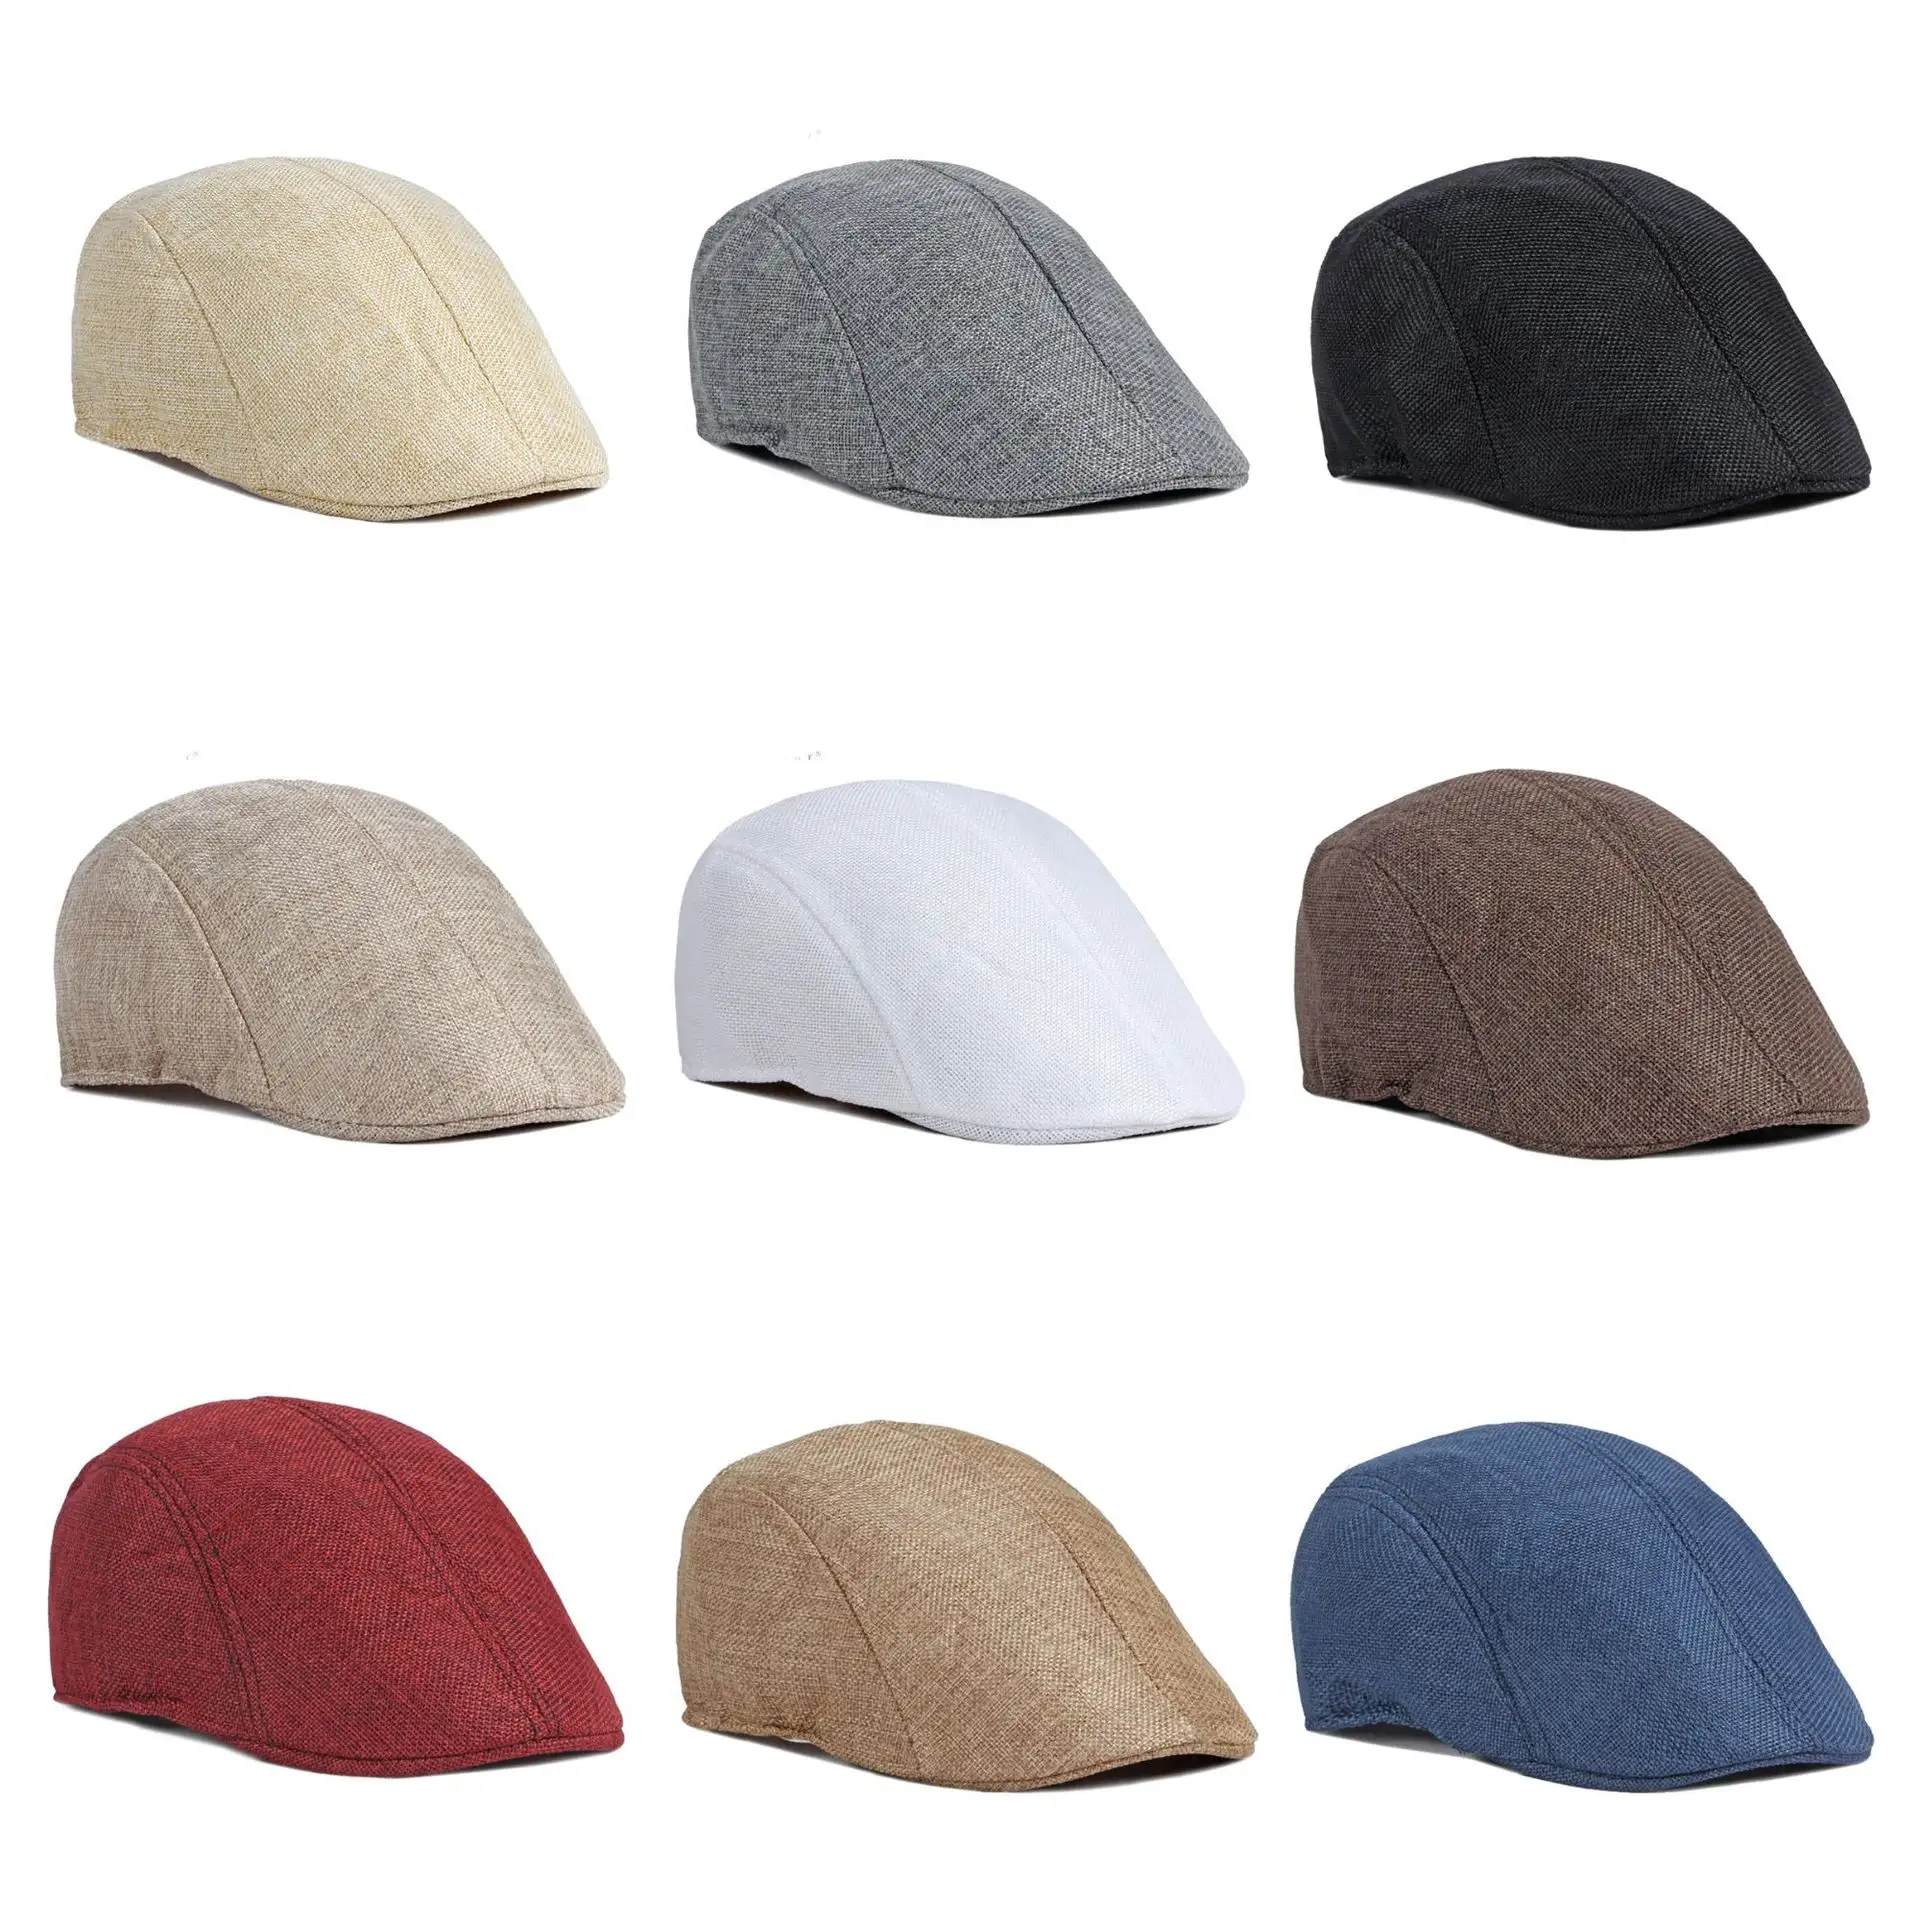 قبعة كلاسيكية بريطانية كلاسيكية من الكتان بألوان سادة قبعة بريت نيوز بوي للرجال للربيع والصيف قبعة أمامية جيدة التهوية